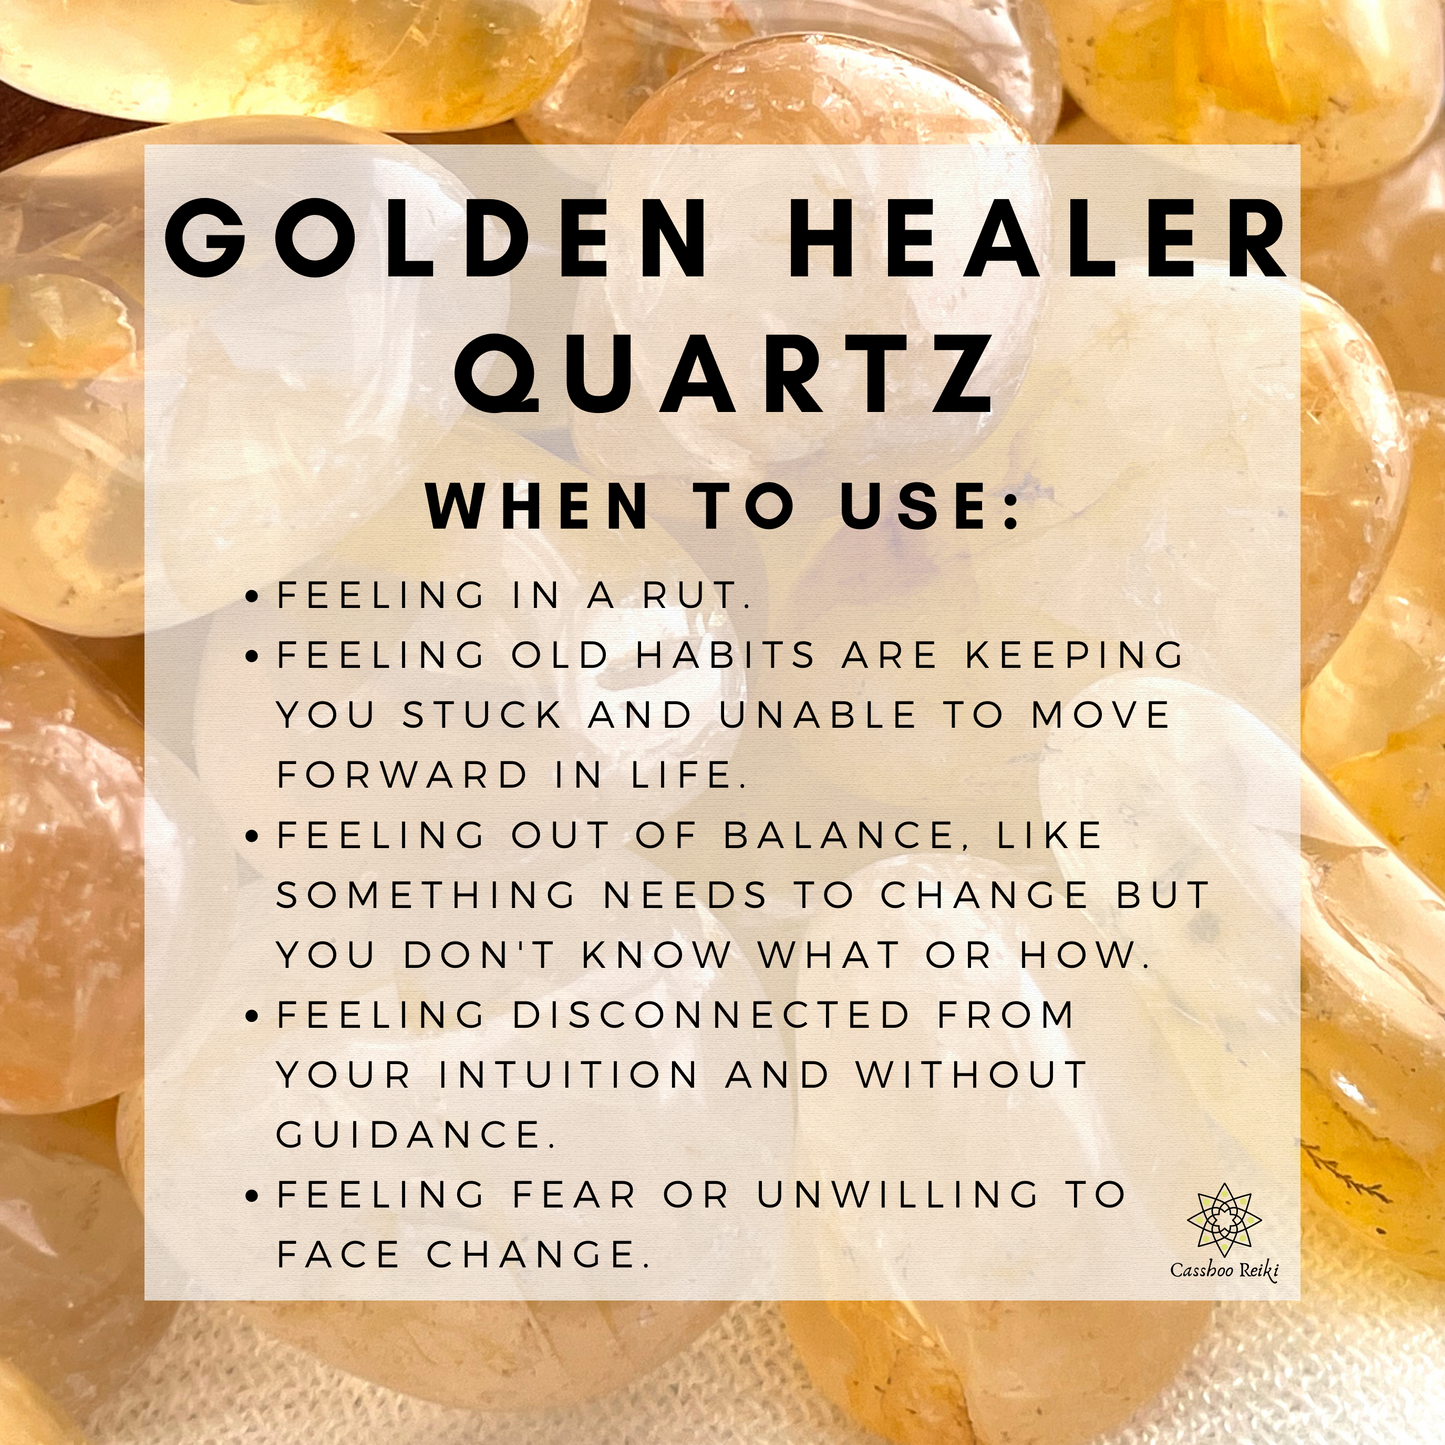 Mini Hematoid / Golden Healer Quartz Puffy Hearts